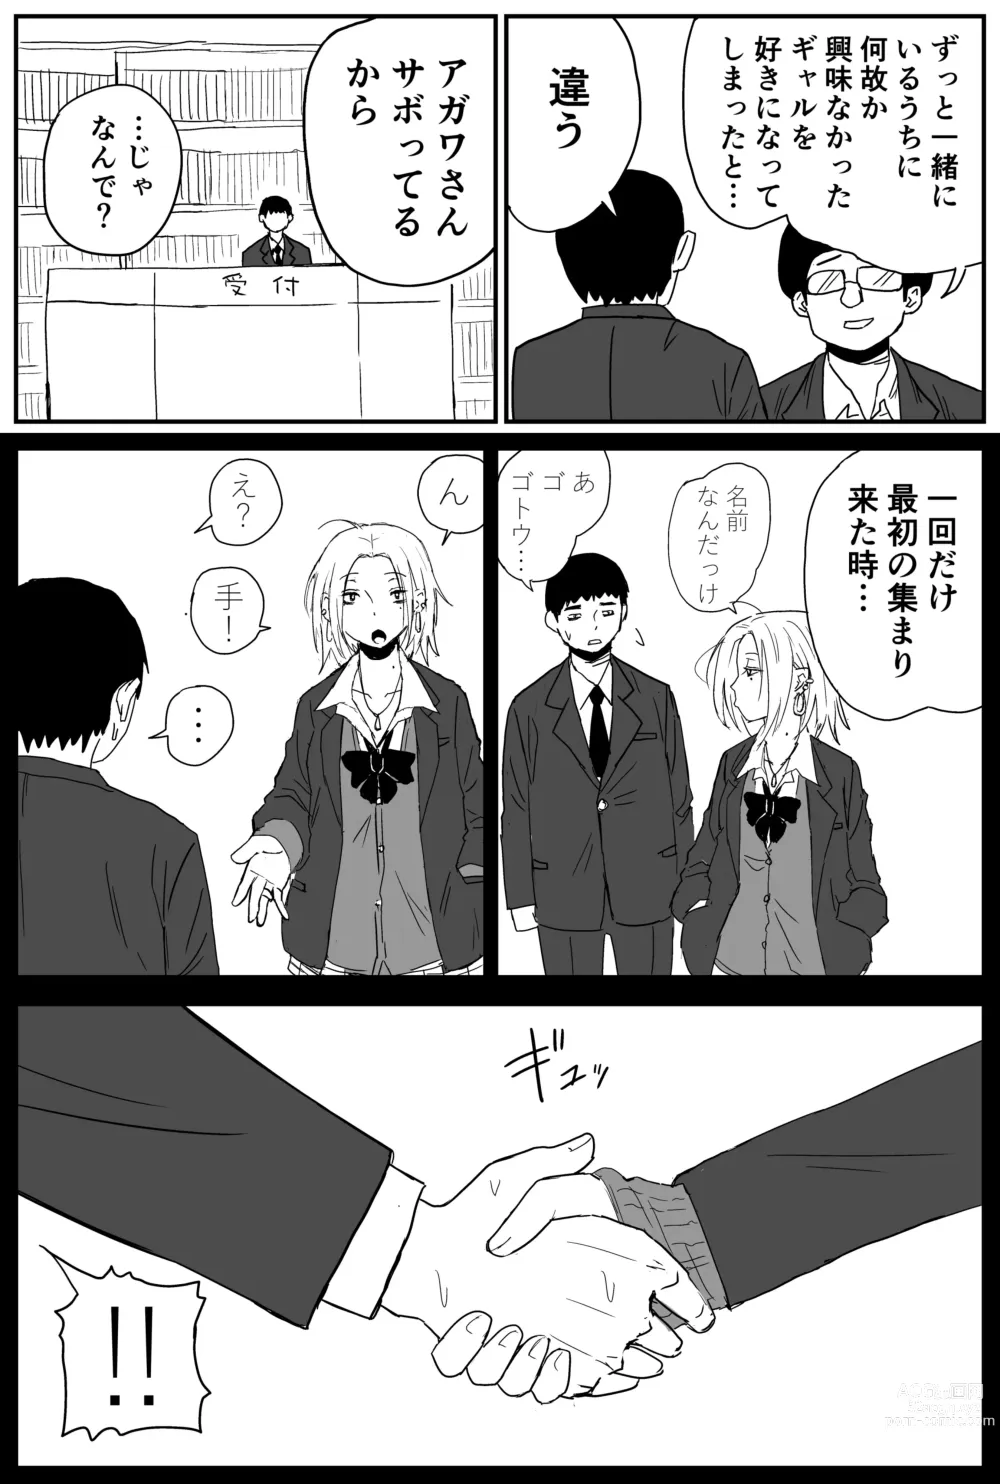 Page 5 of doujinshi Gal JK Ero Manga Ch.1-27